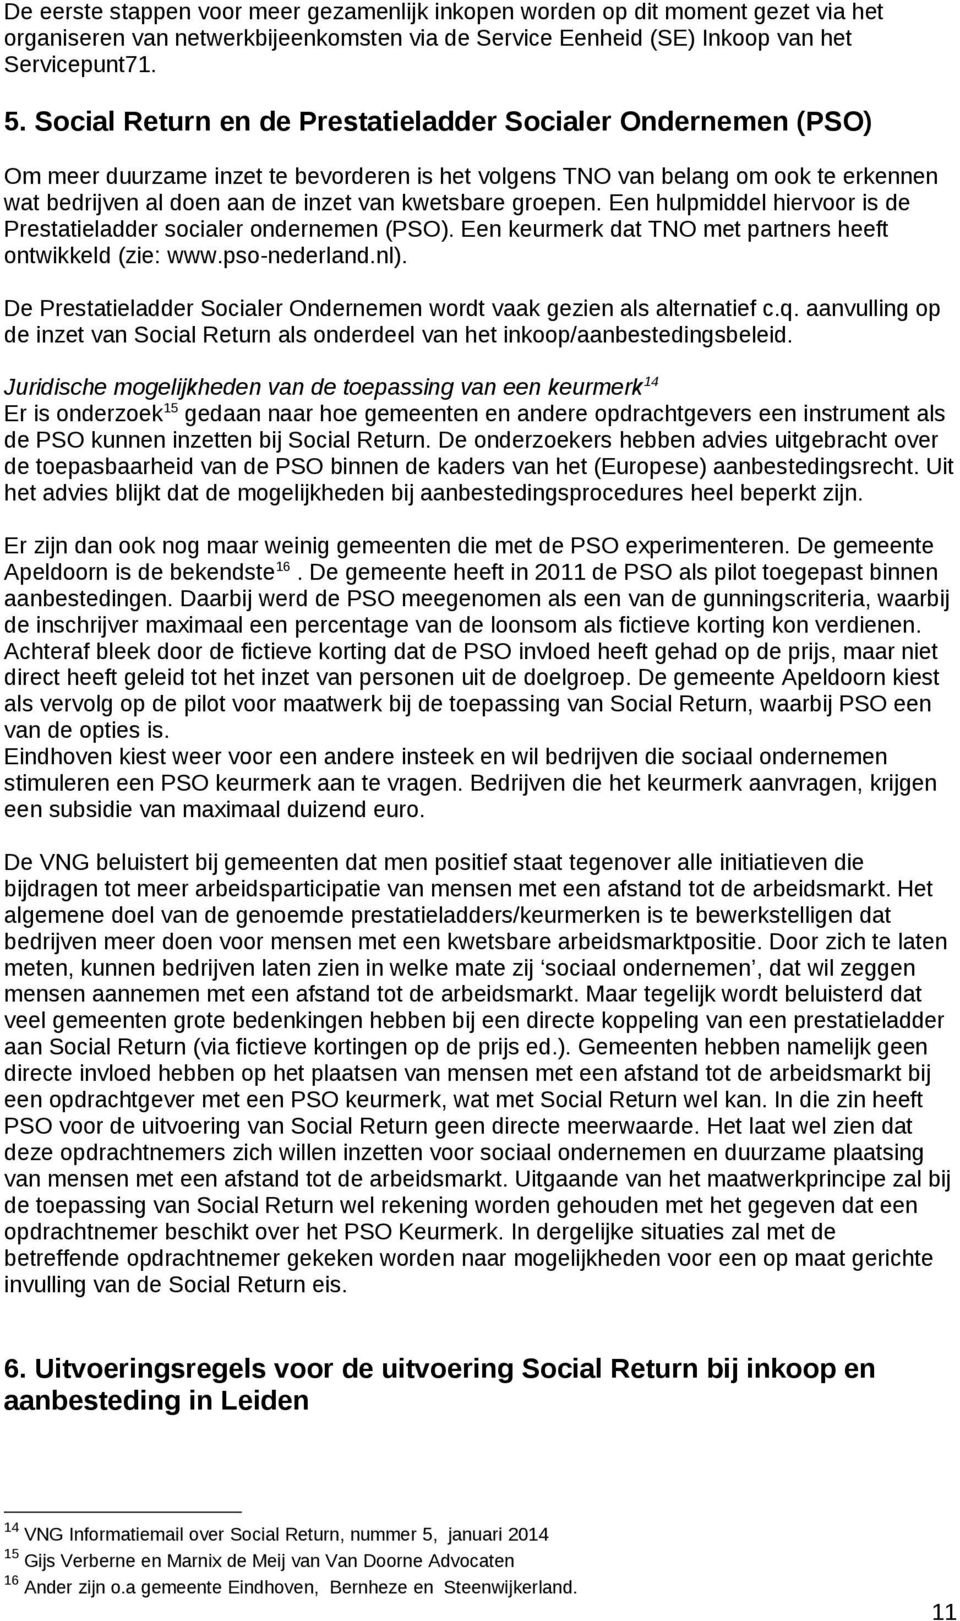 groepen. Een hulpmiddel hiervoor is de Prestatieladder socialer ondernemen (PSO). Een keurmerk dat TNO met partners heeft ontwikkeld (zie: www.pso-nederland.nl).